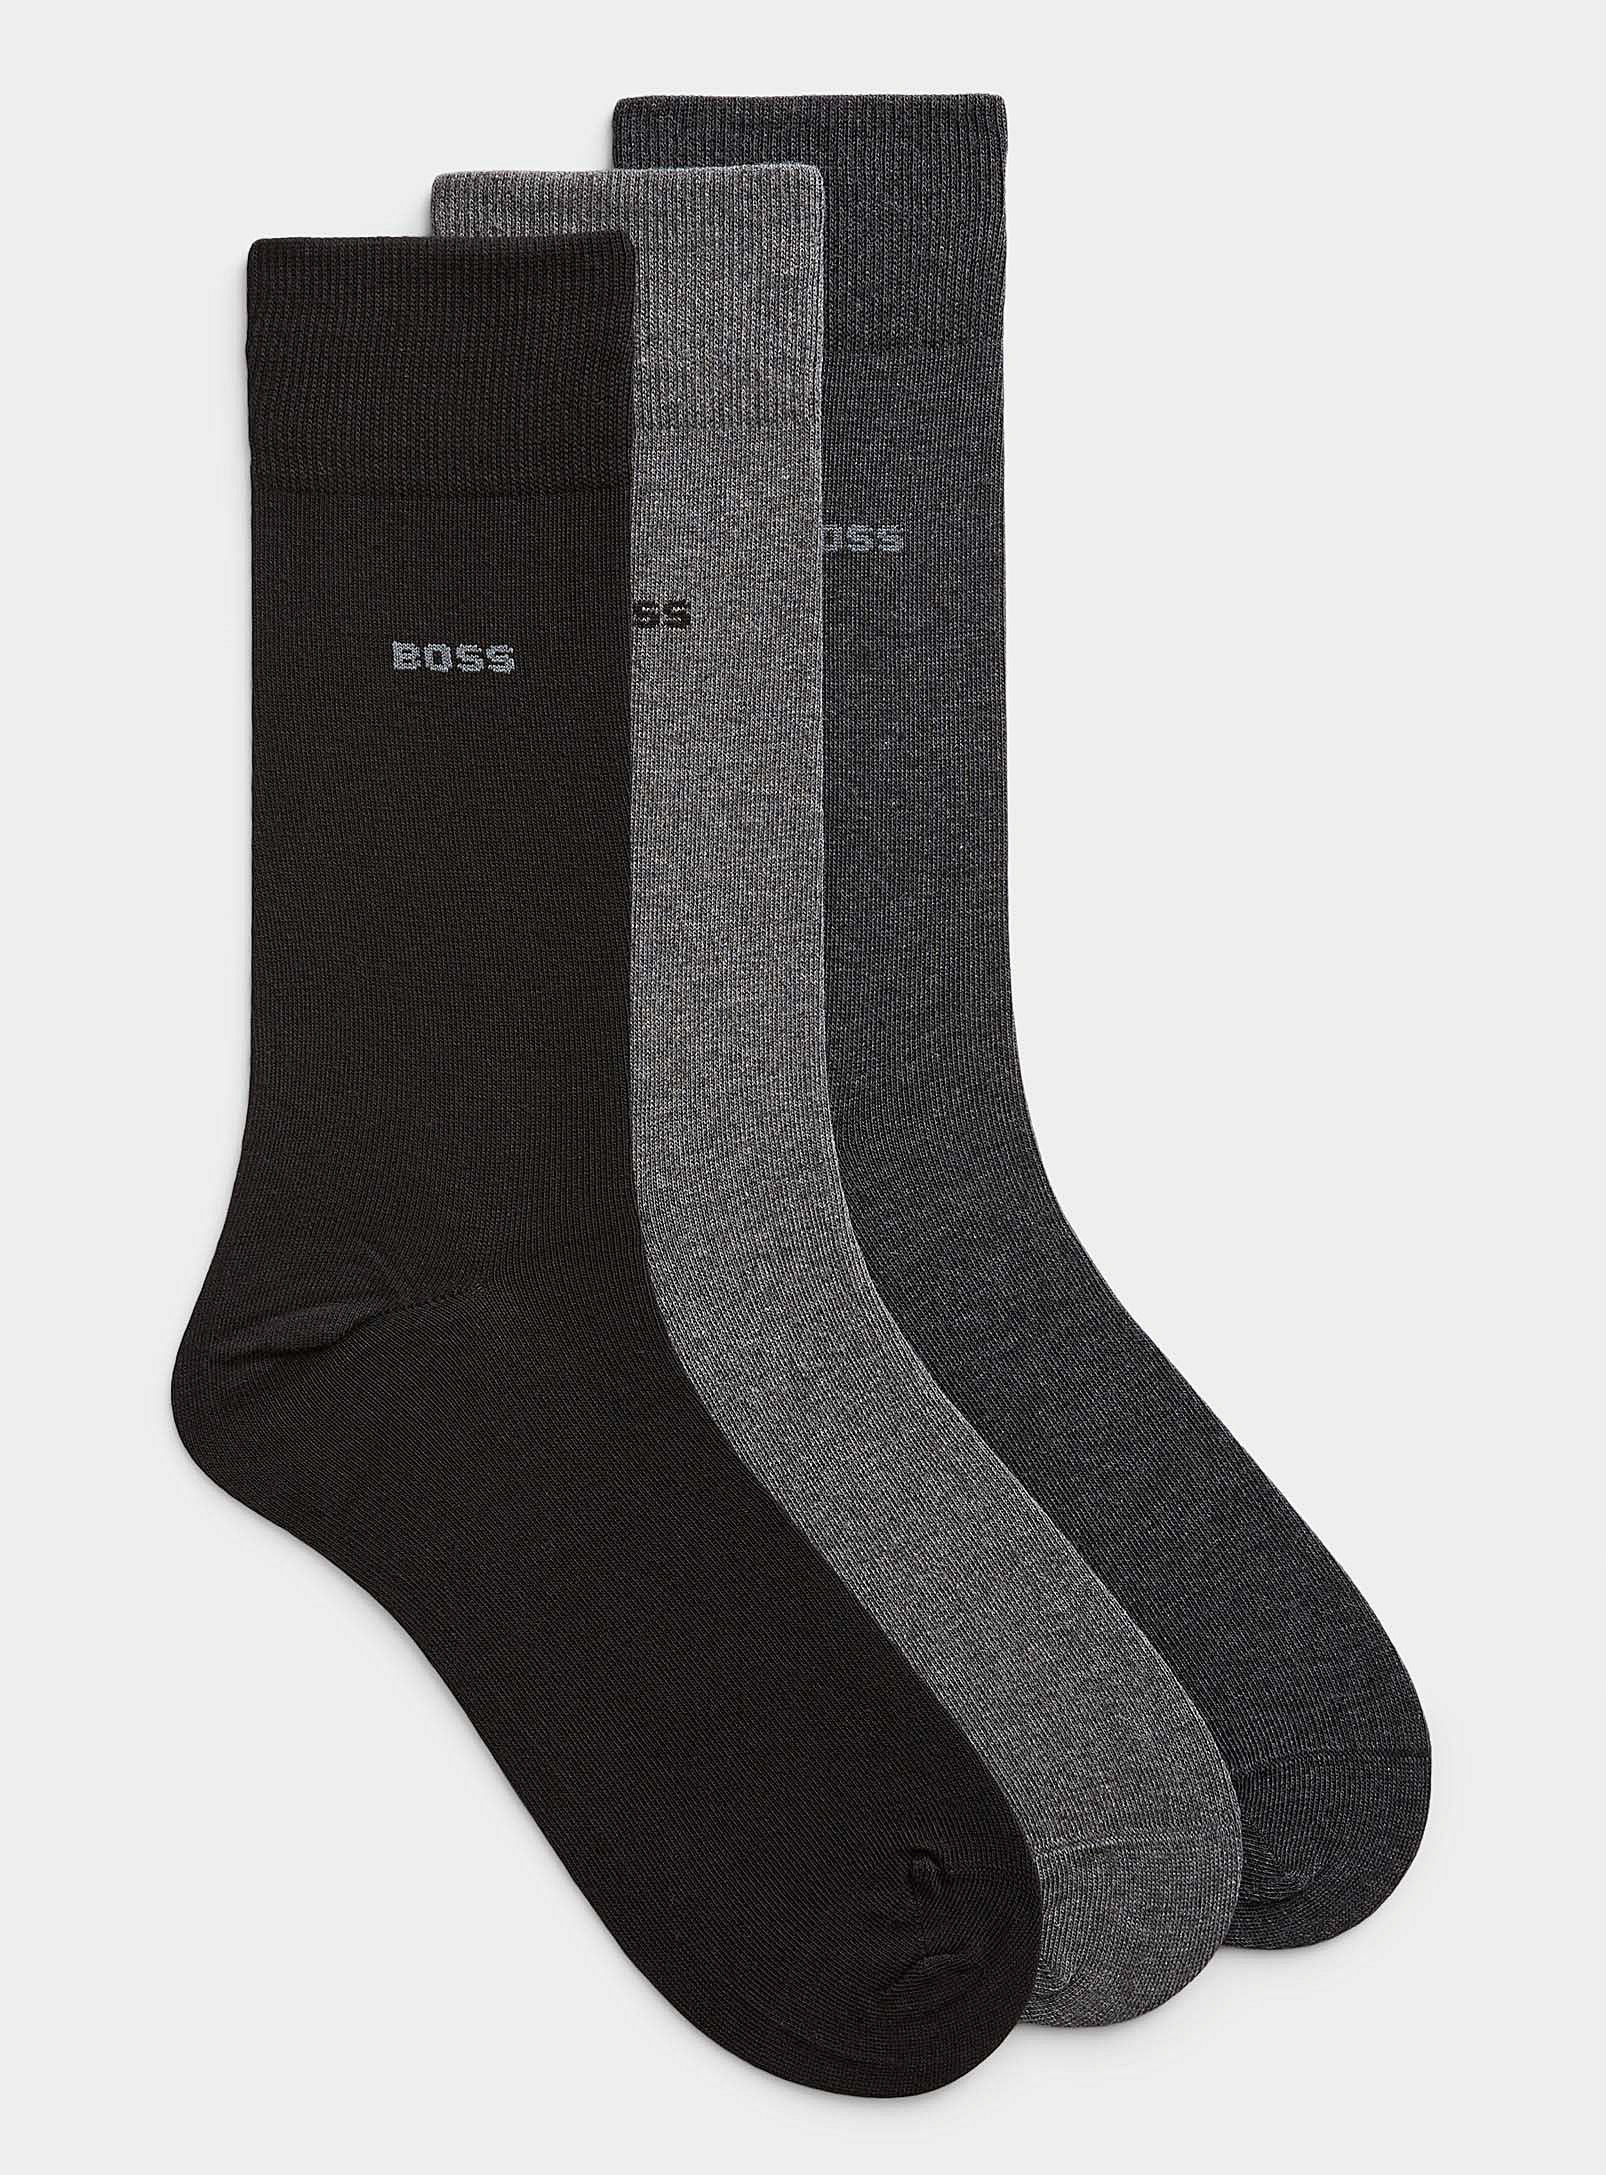 Hugo Boss Neutral Dress Socks 3-pack In Black